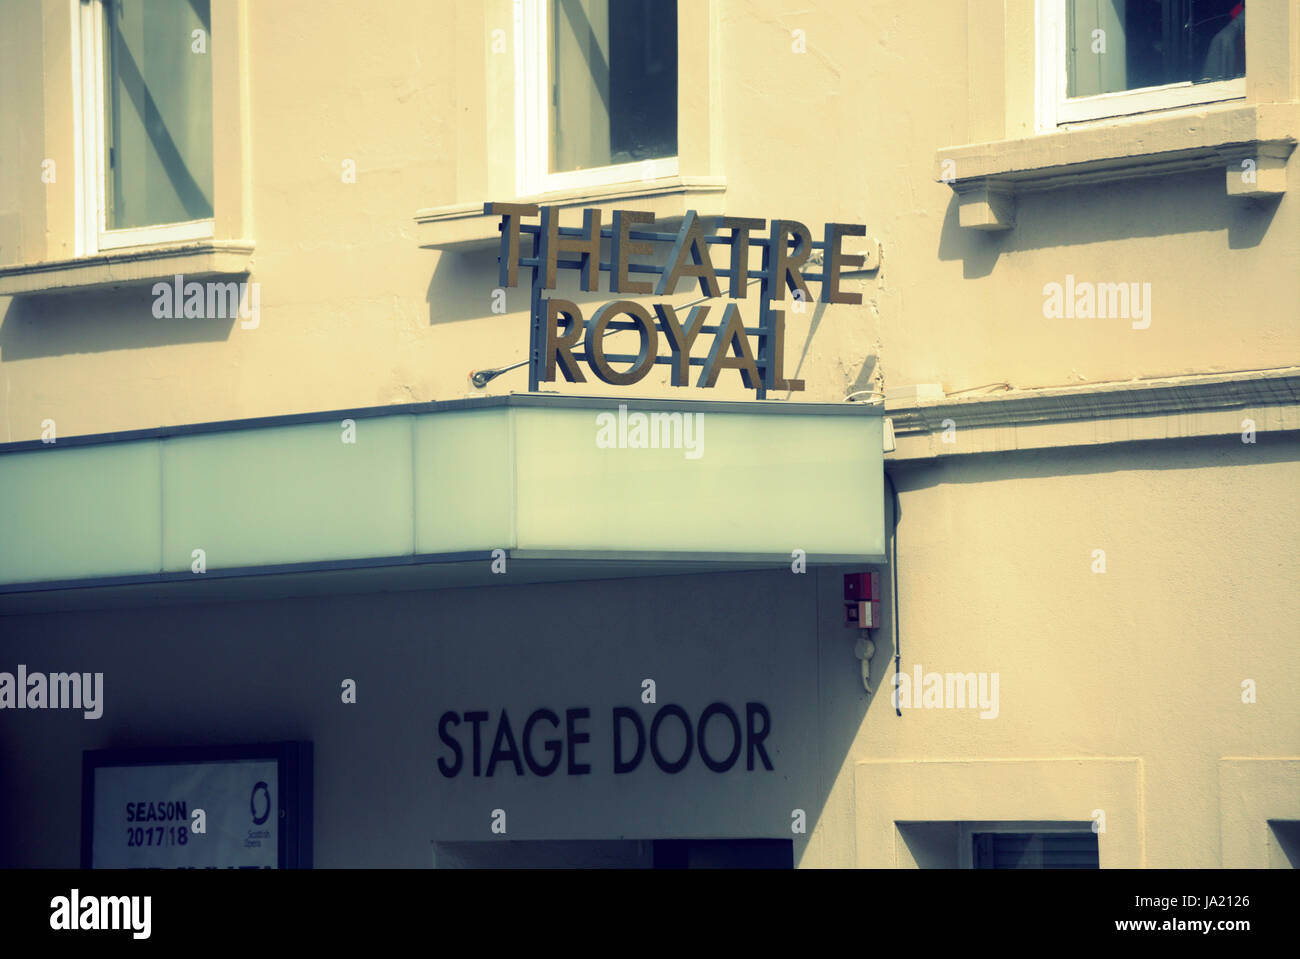 Theatre Royal Bühneneingang Glasgow Zeichen Stockfoto